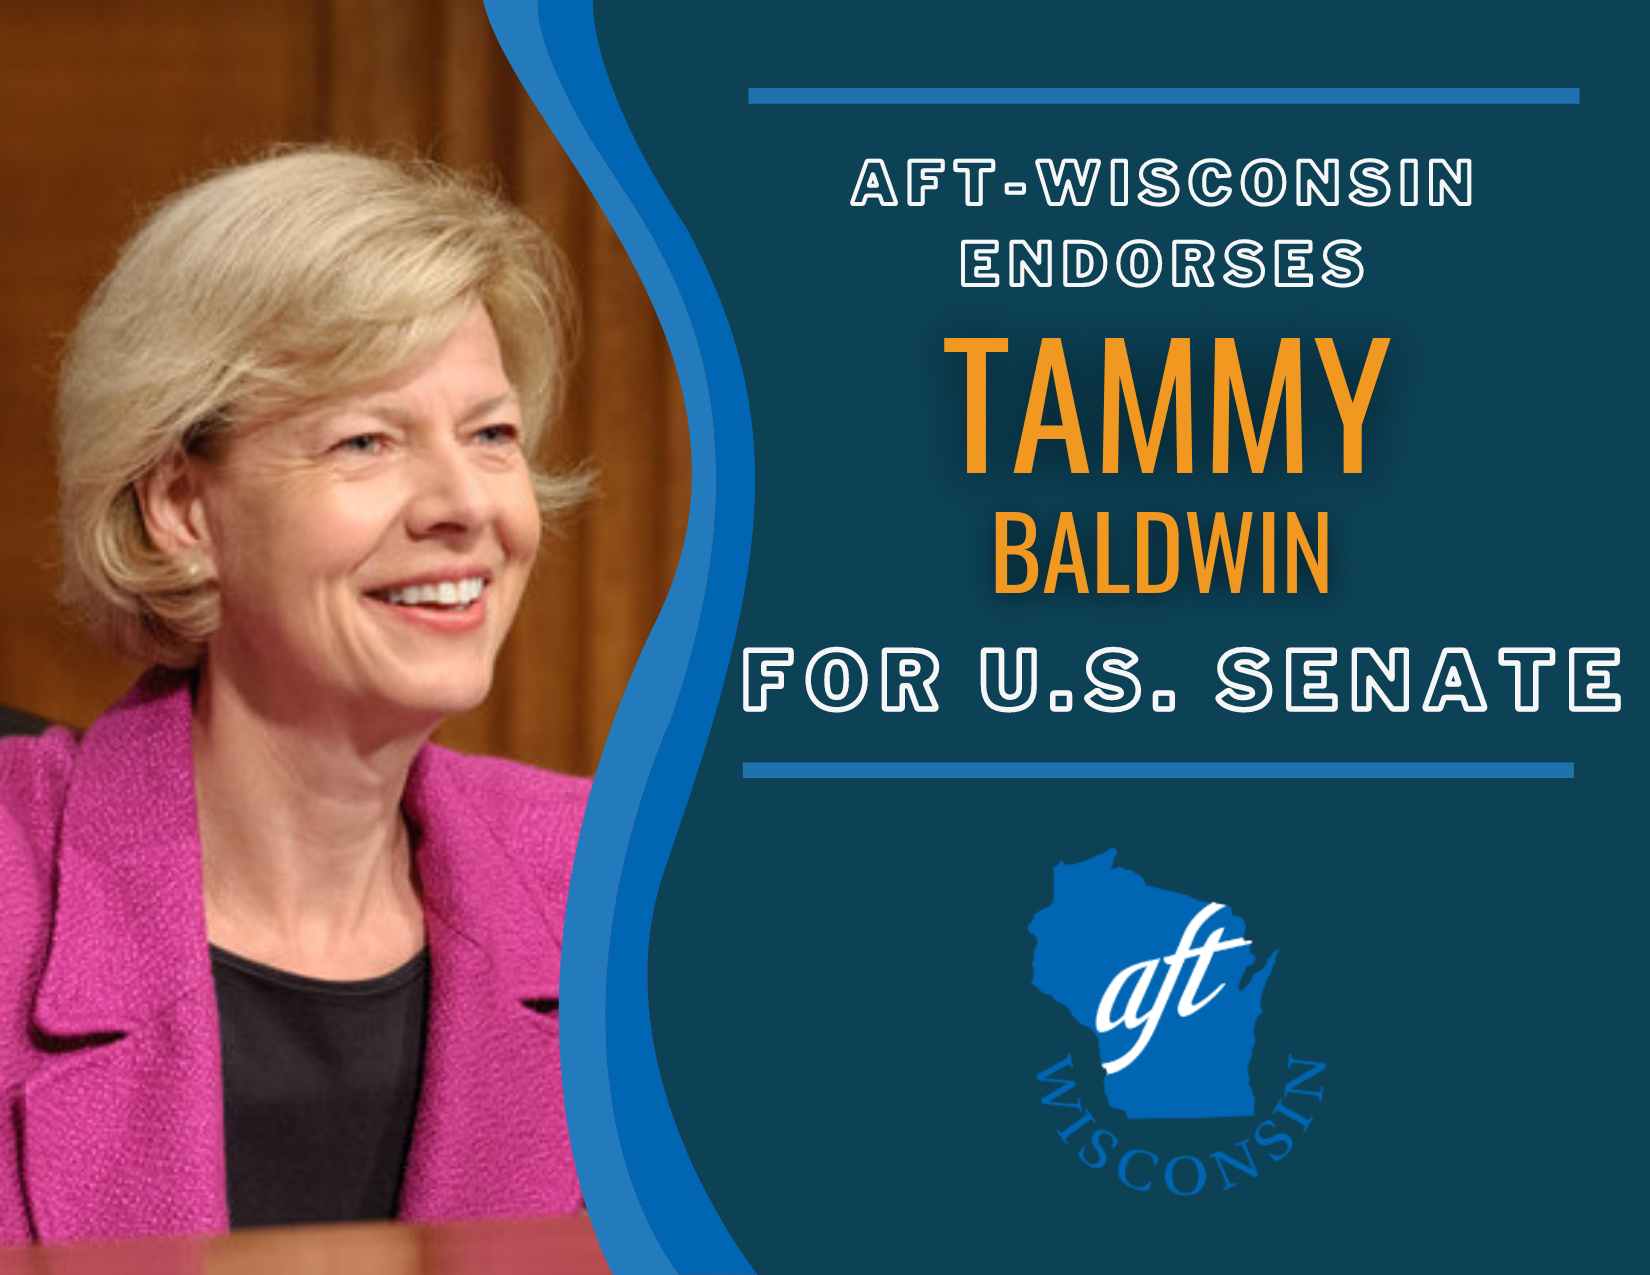 Tammy Baldwin for U.S. Senate Endorsement